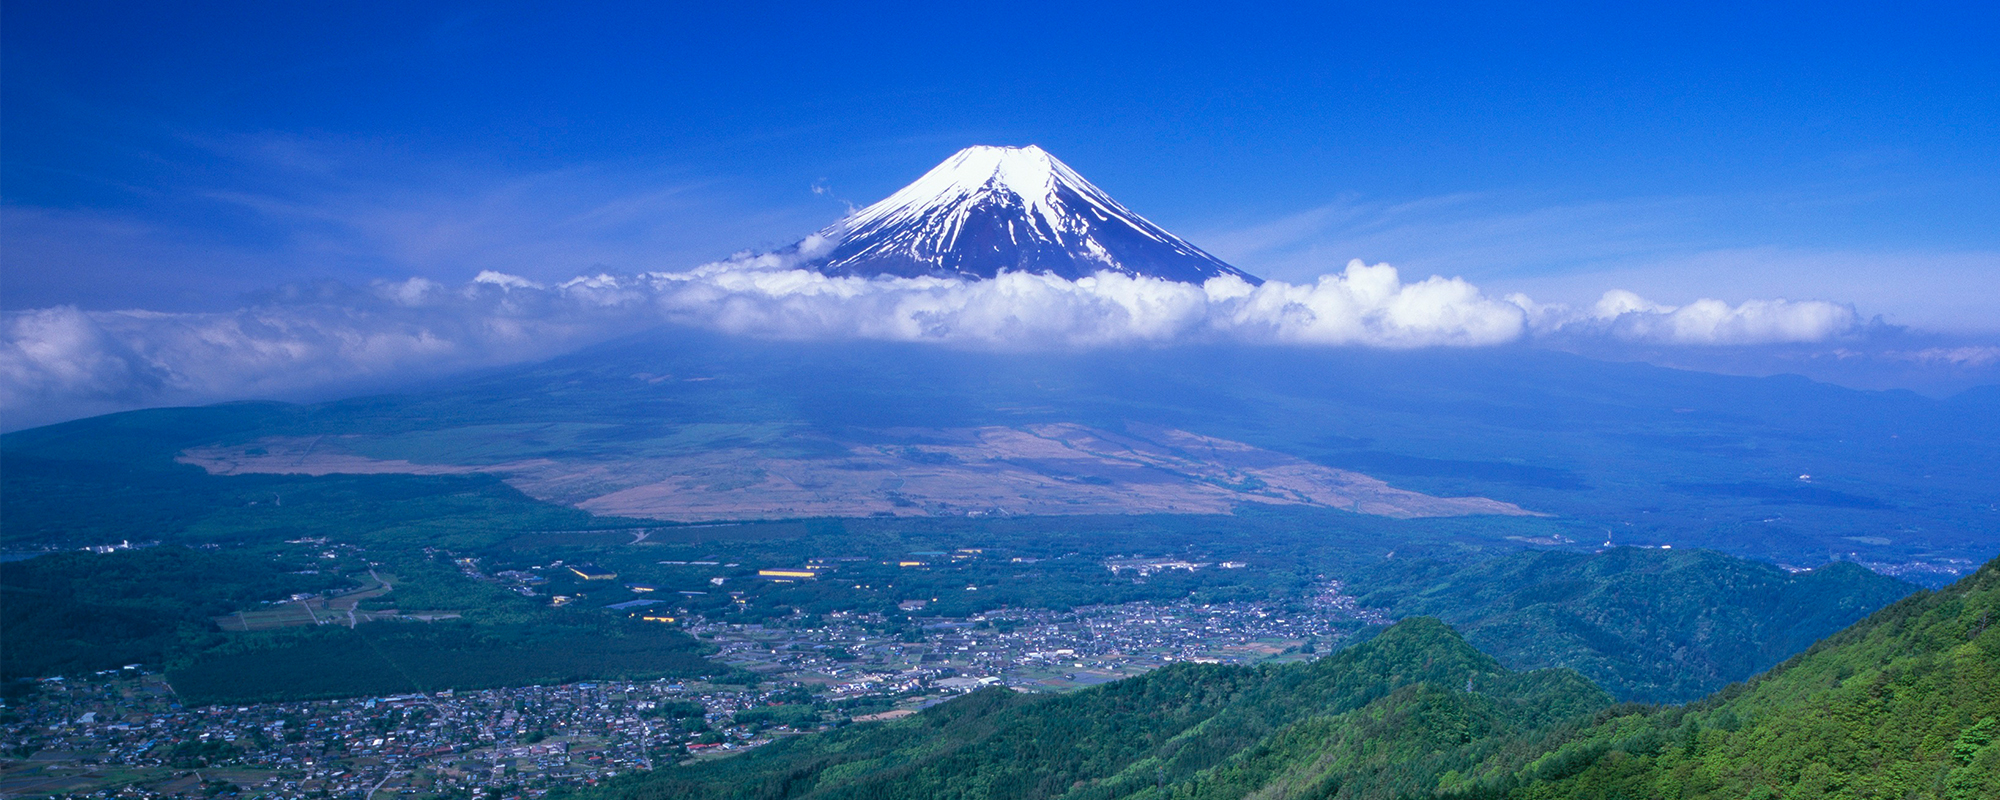 高座山から眺める雲の上の富士と眼下の忍野村の画像